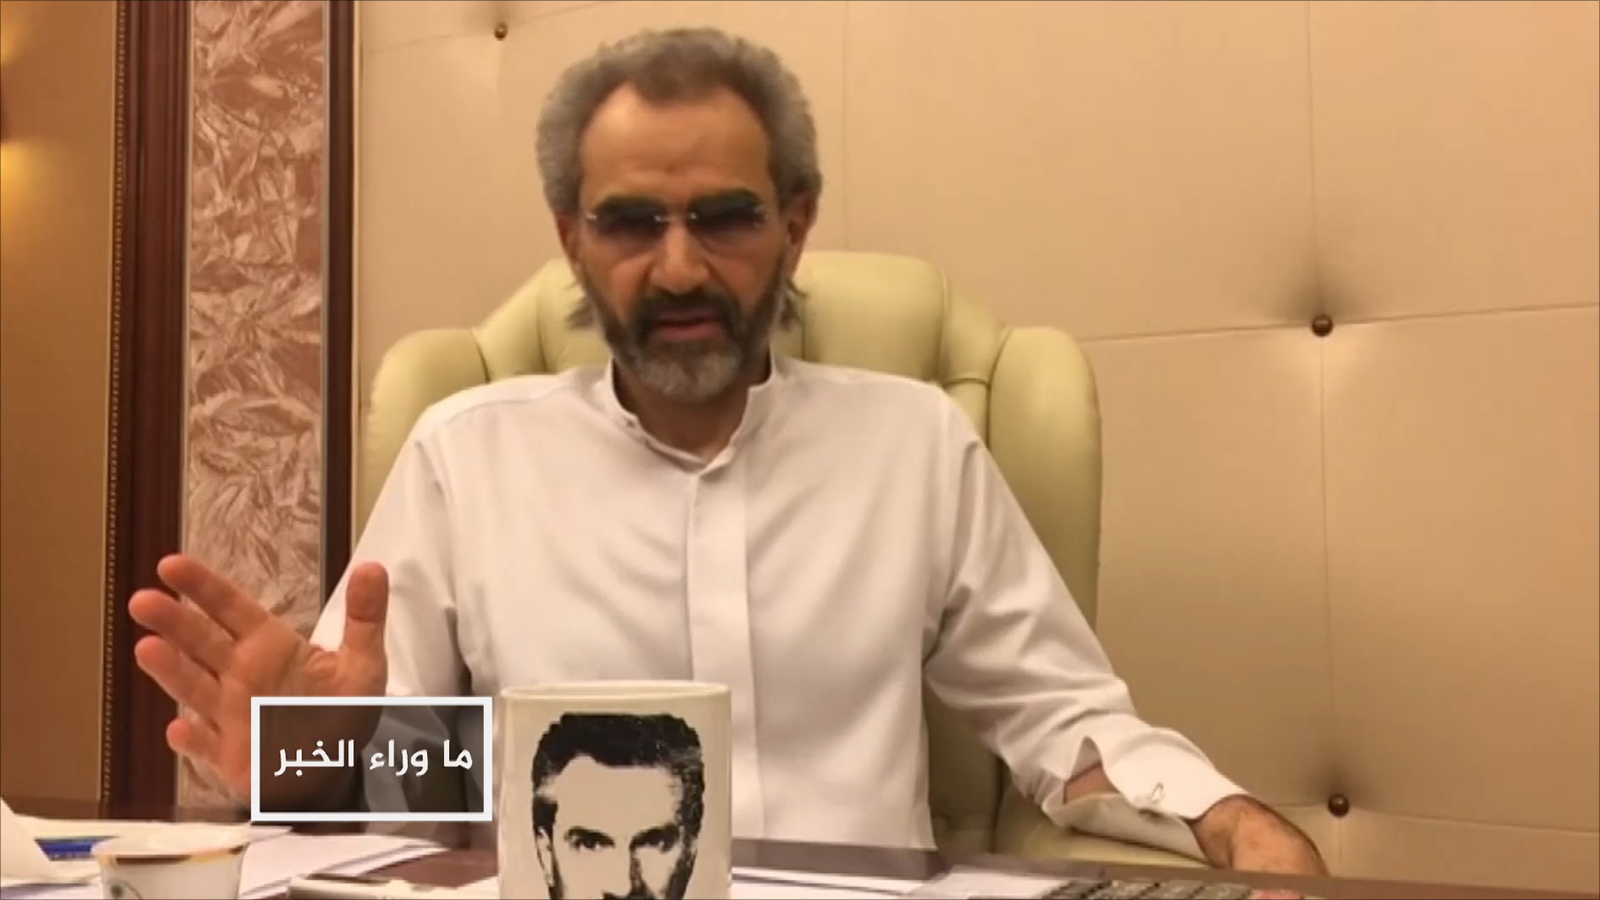 الأمير الوليد بن طلال أطلق سراحه بمقتضى تسوية وفق ما نقلت صحف غربية (الجزيرة)